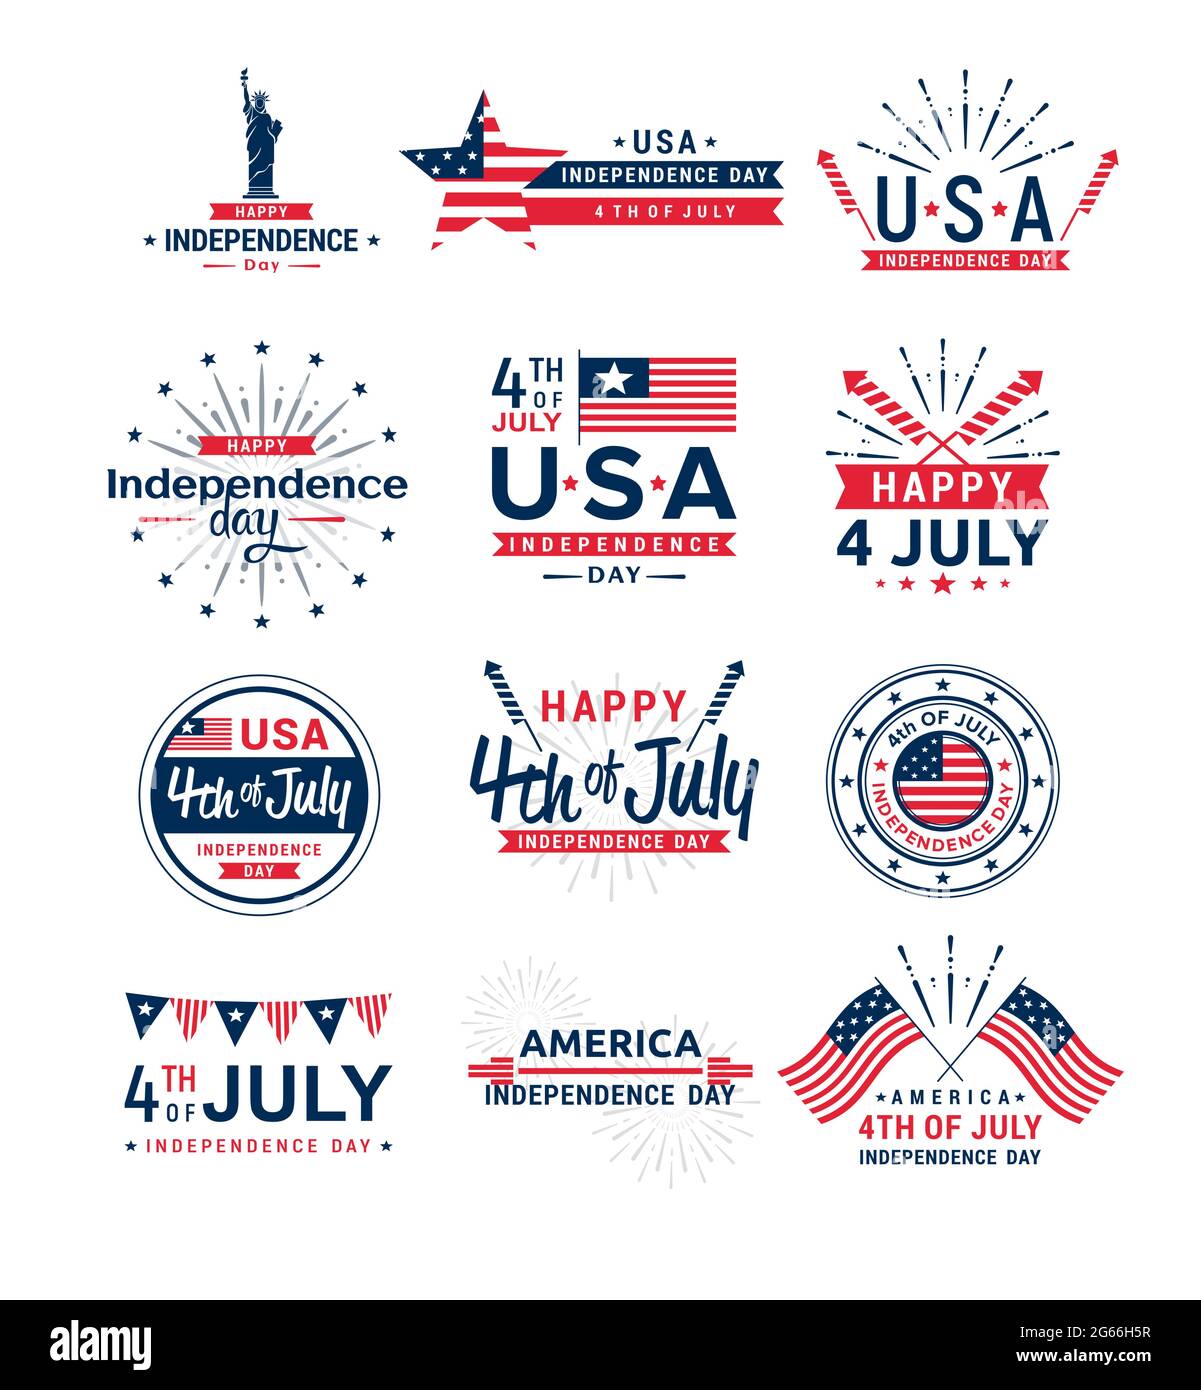 Vektor-Illustration Satz von 4. Juli Grußkarten Logos, United erklärte Unabhängigkeit Tag Gruß. 4. Juli Kollektion typografischer Elemente für Stock Vektor